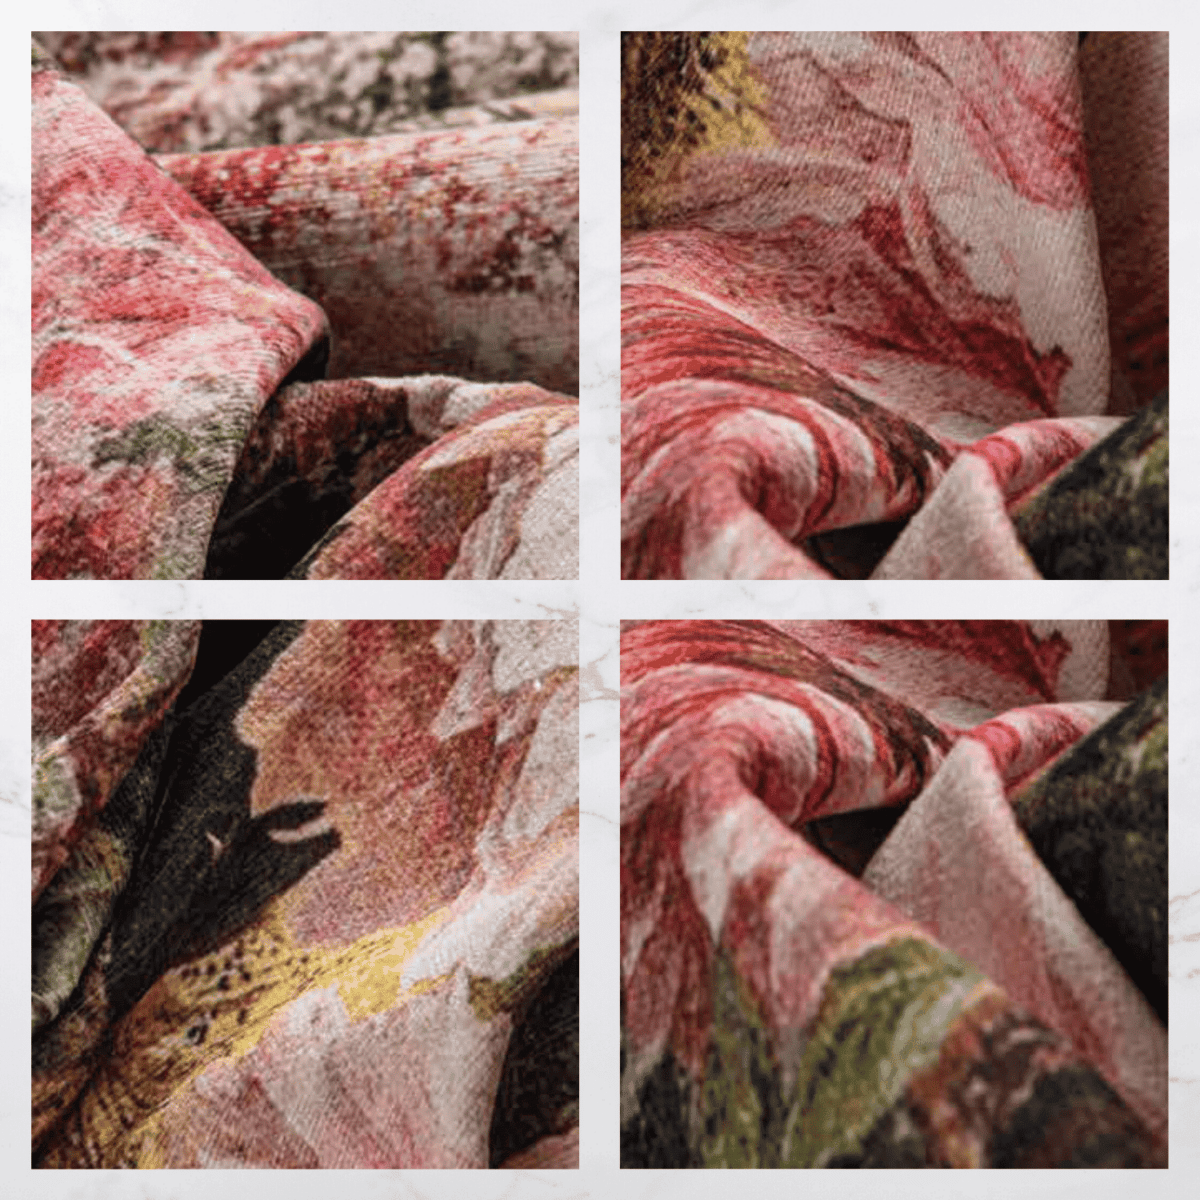 bosschaert-tabacco-tappeto-arredo-emozioni-artista-bouquet-multicolor-fiorato-marrone-classico-front-dettaglio